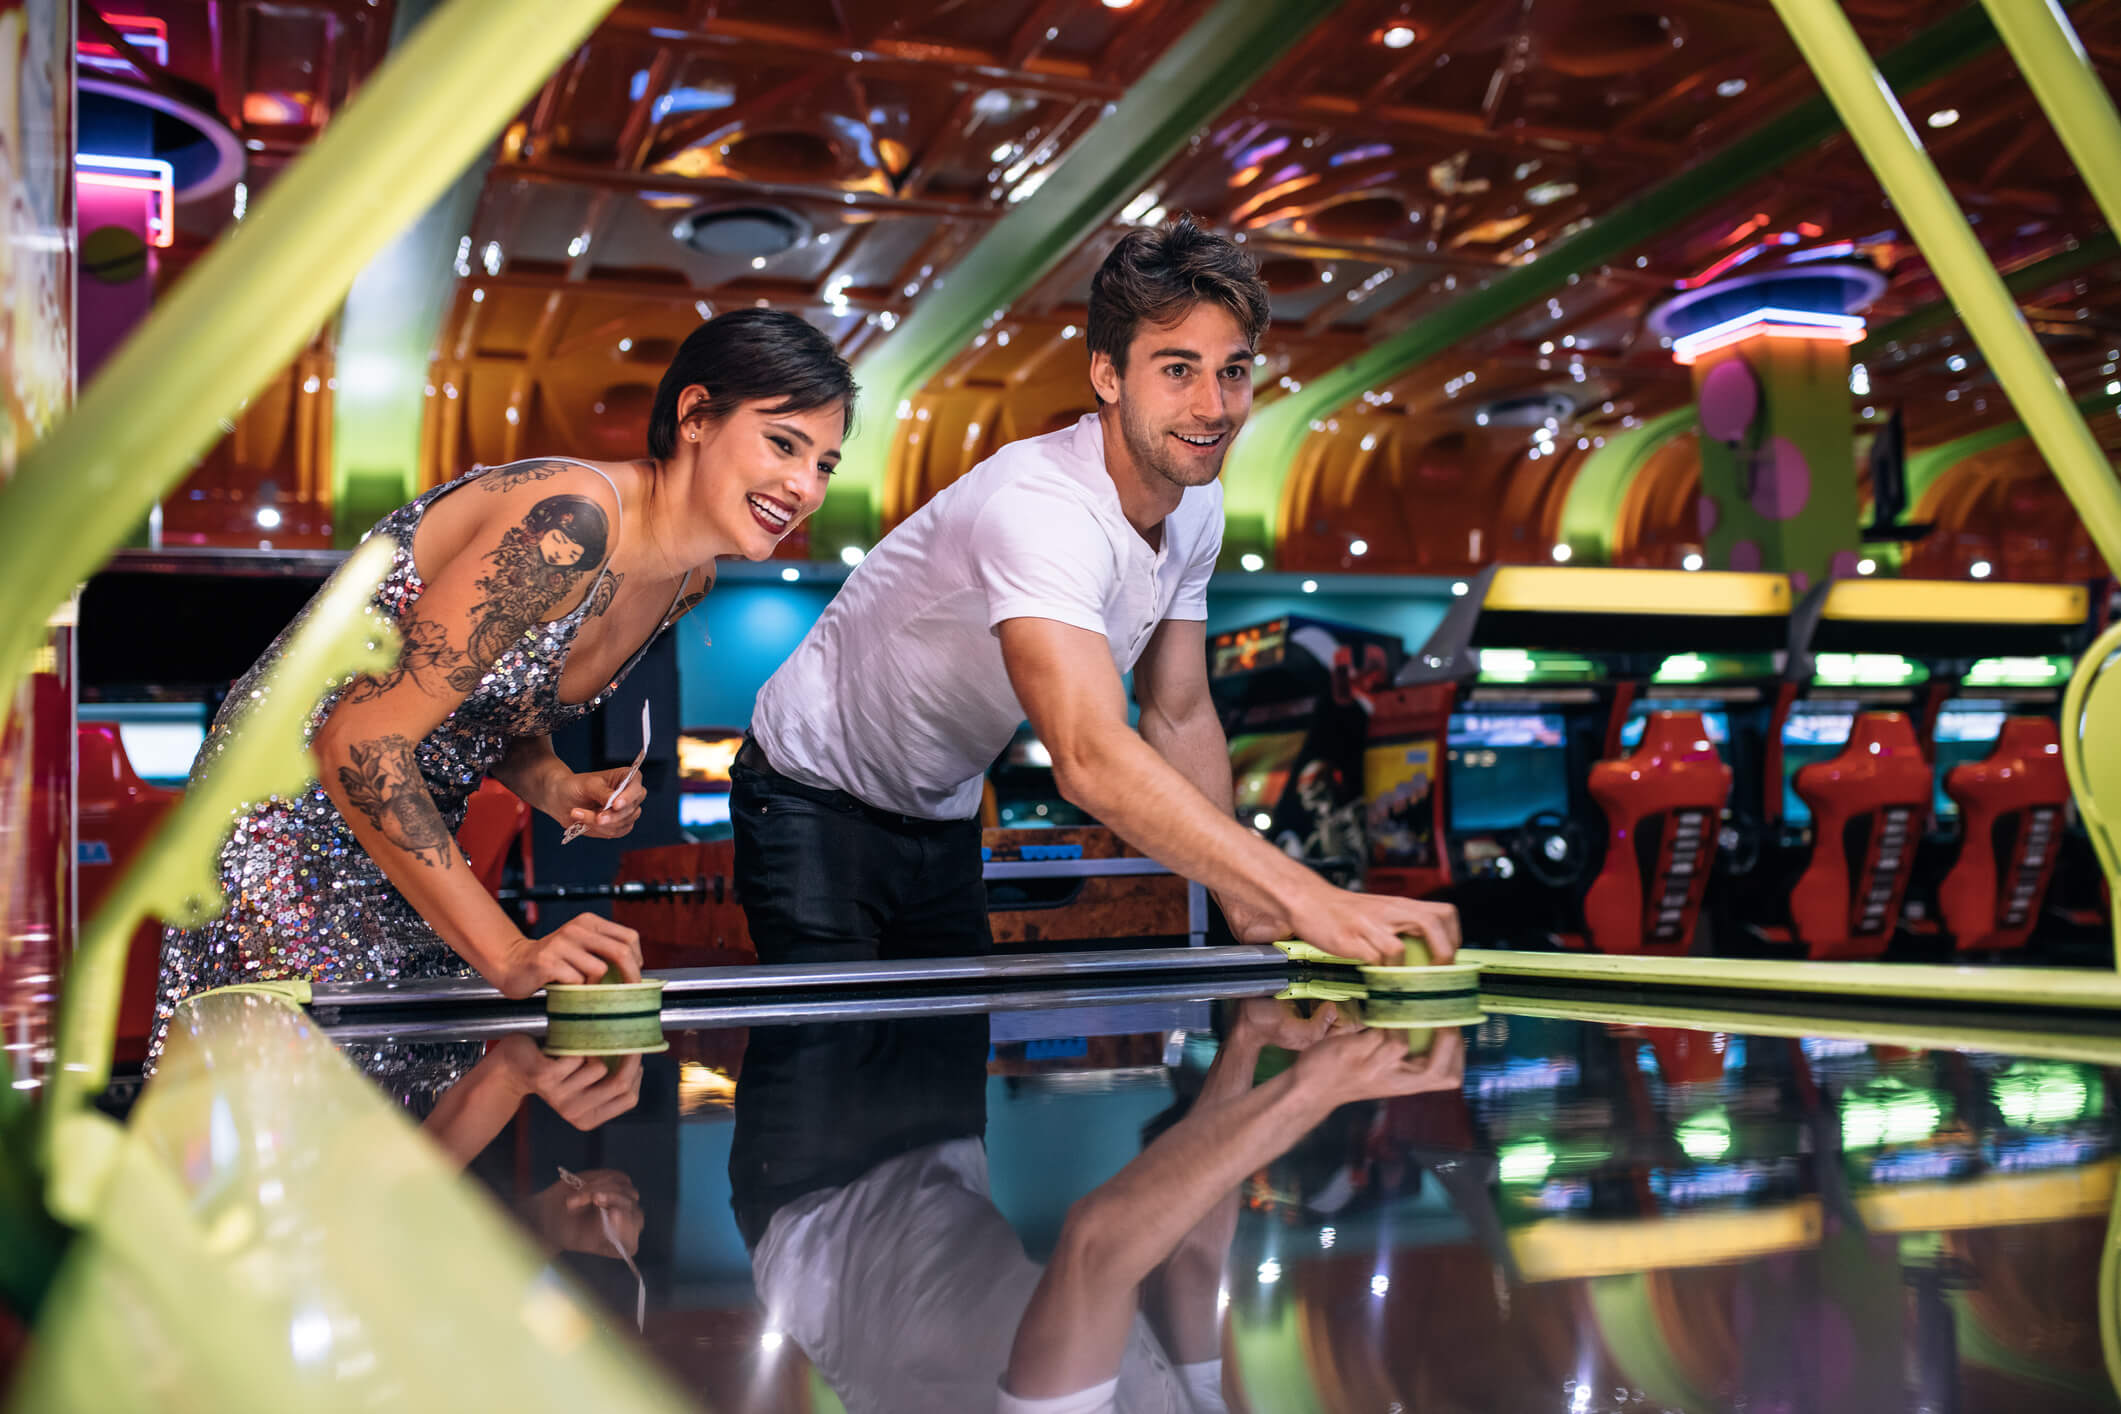 Couple playing air hockey at an arcade